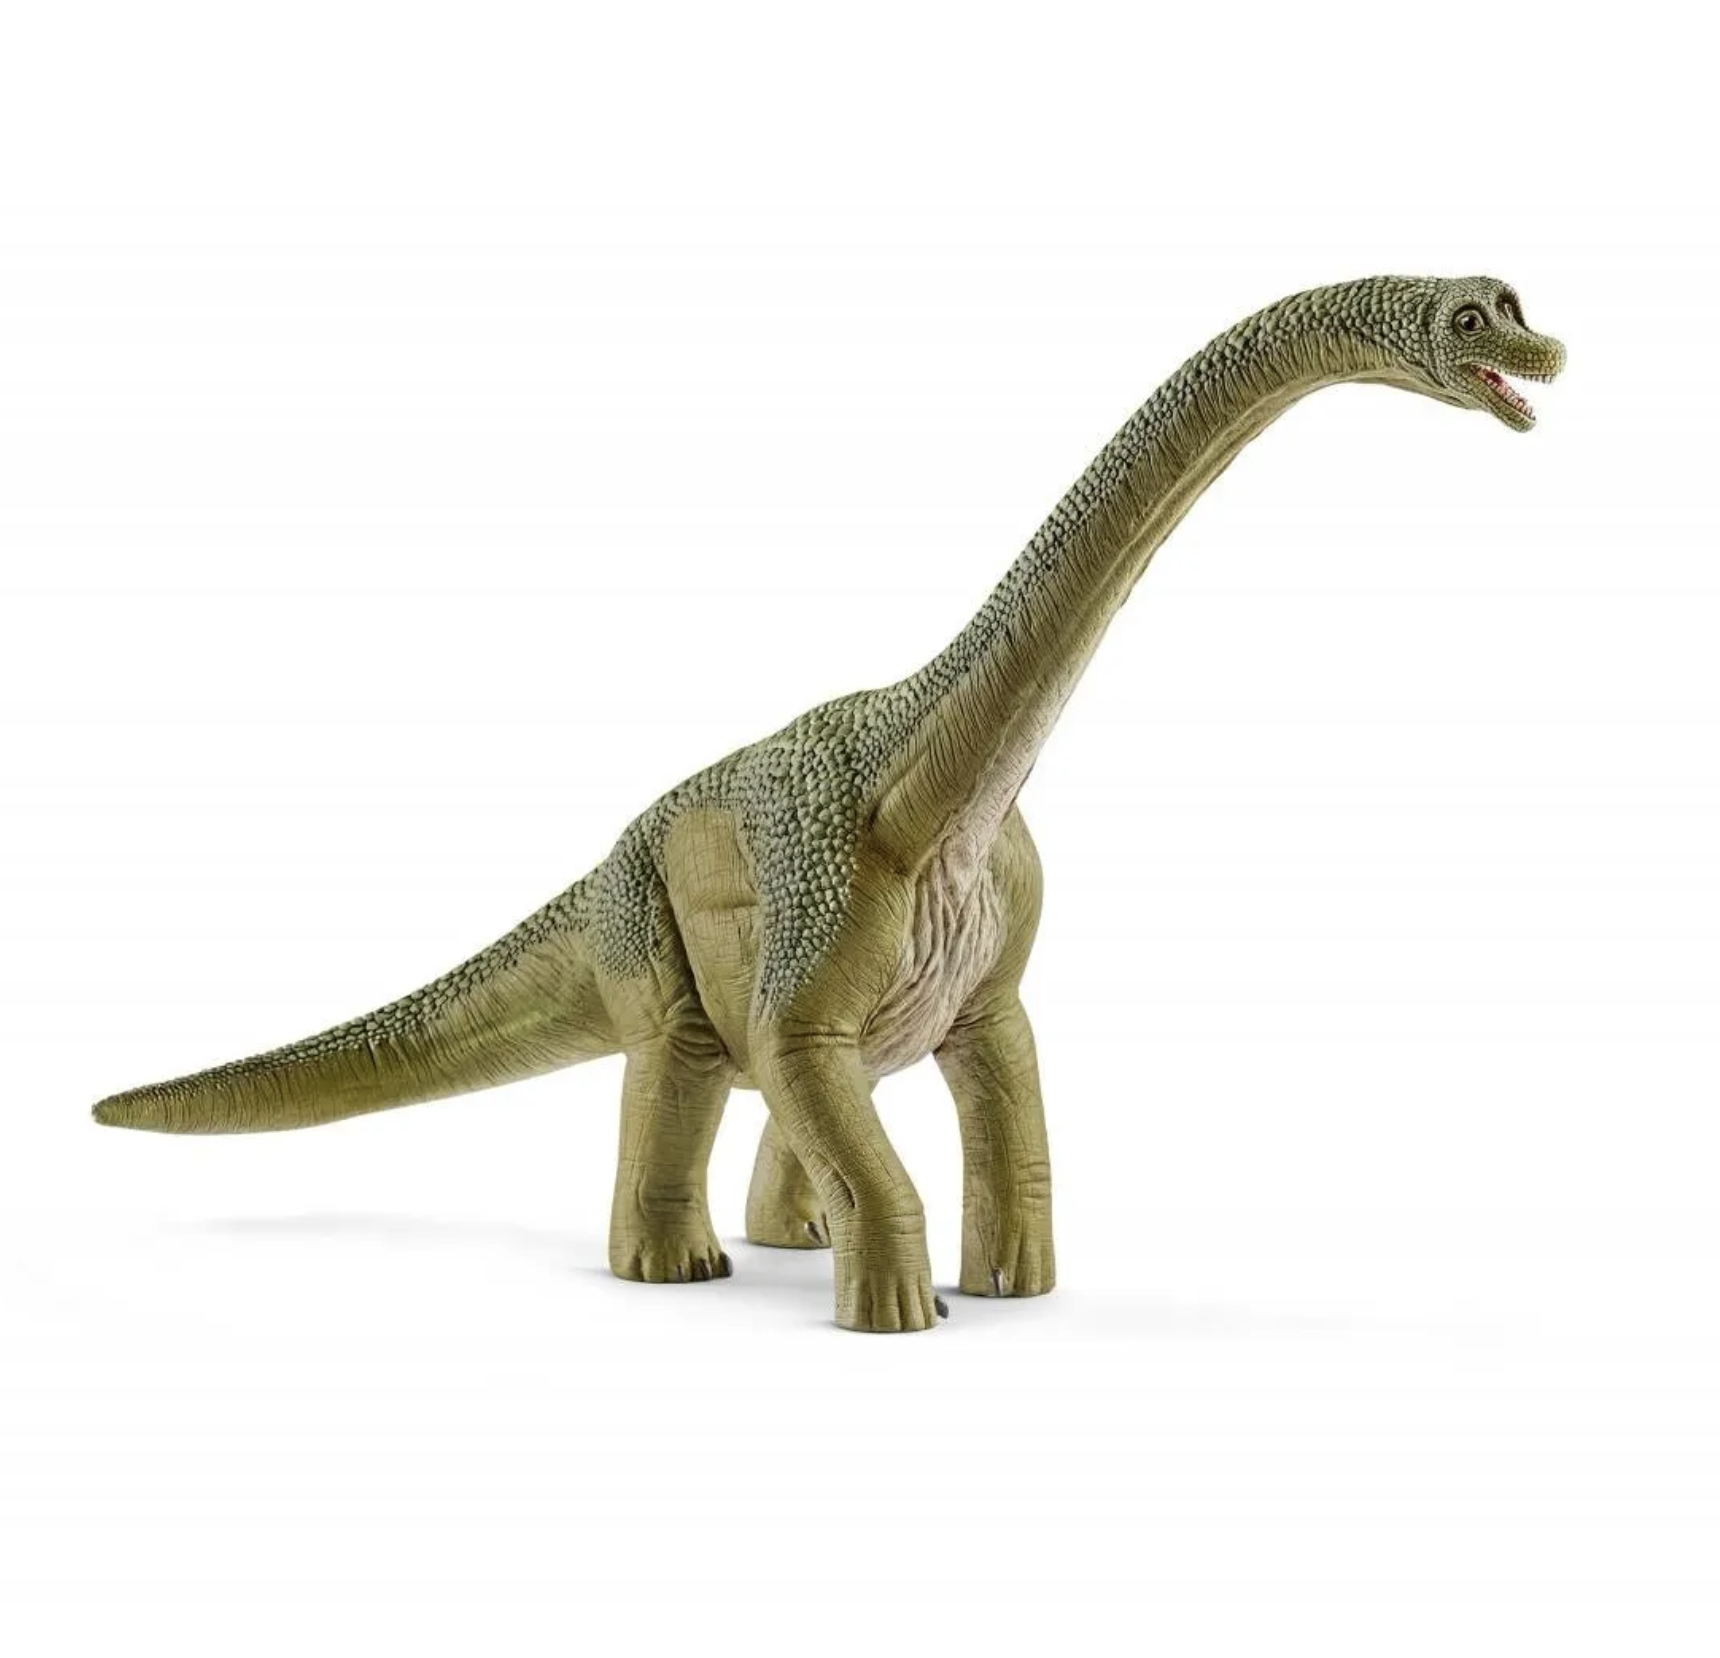 Schleich Brachiosaurus 